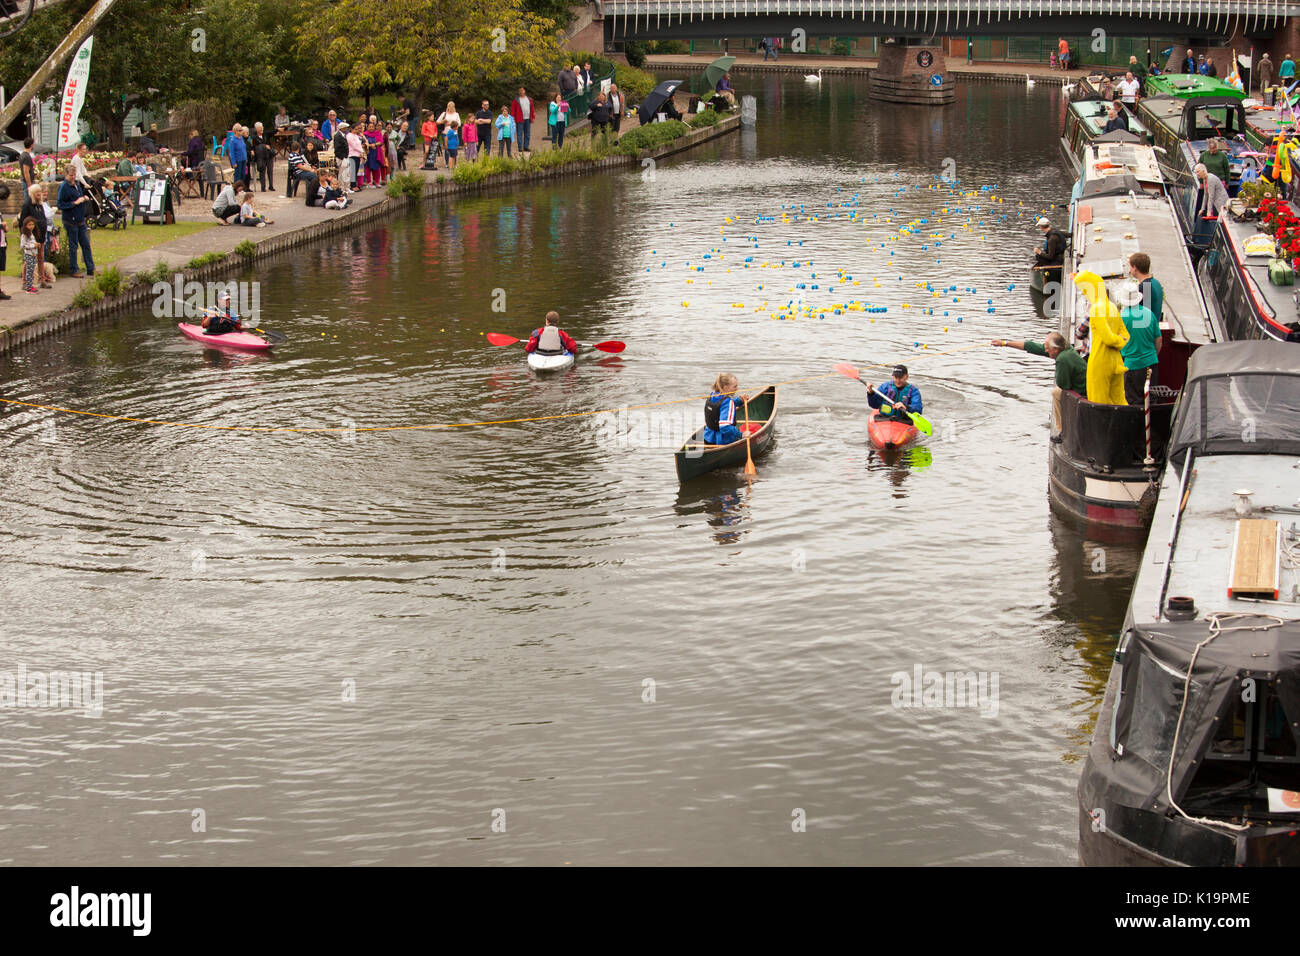 Newbury waterways festival 2017 duck race Stock Photo